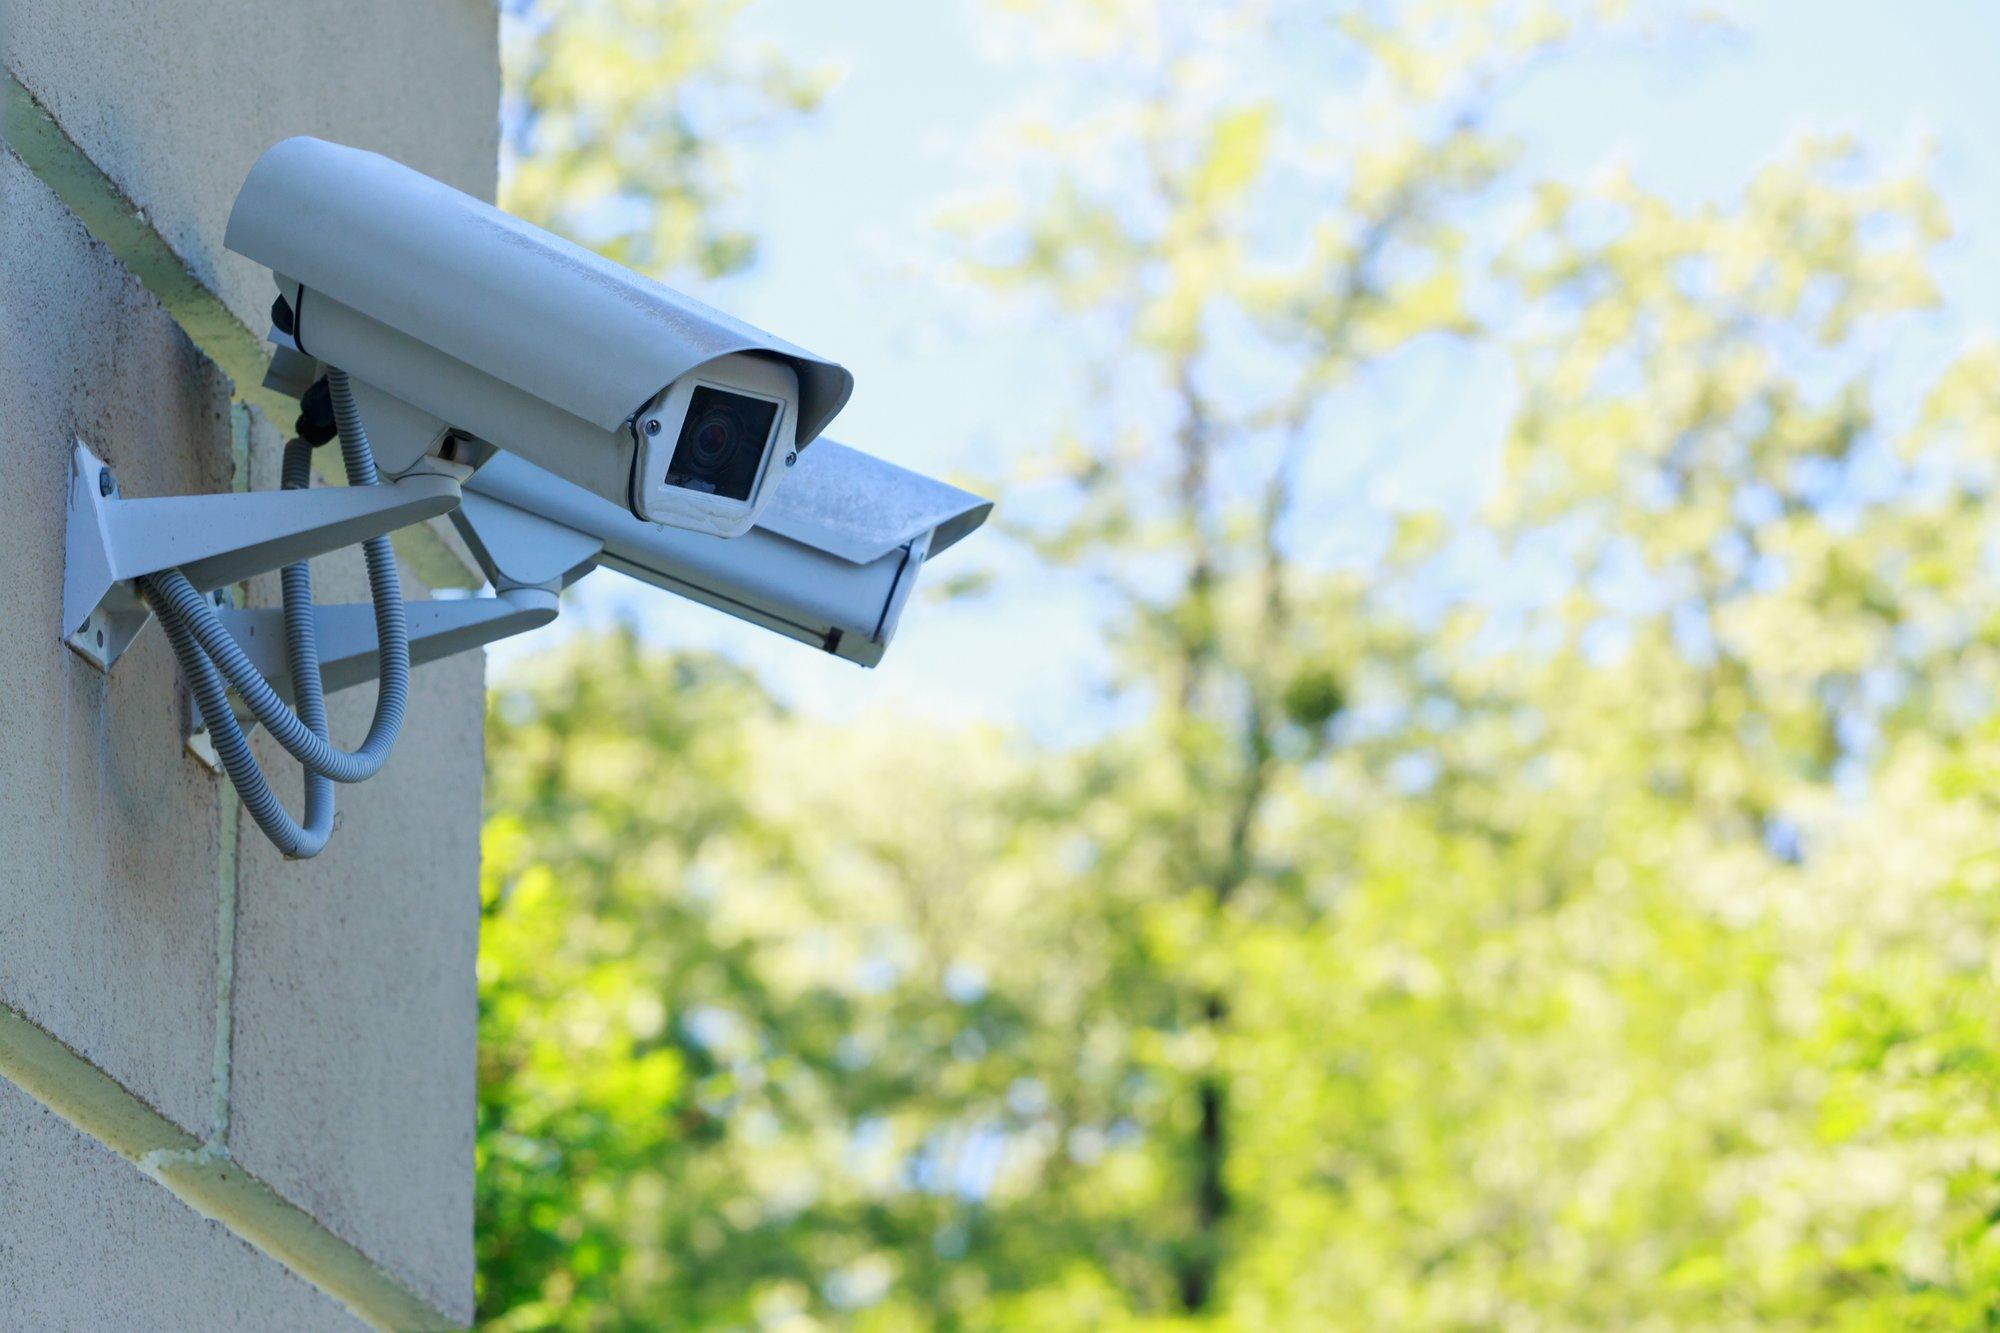 Lazdijų rajone planuojama įrengti visą parą veikiančias stebėjimo kameras